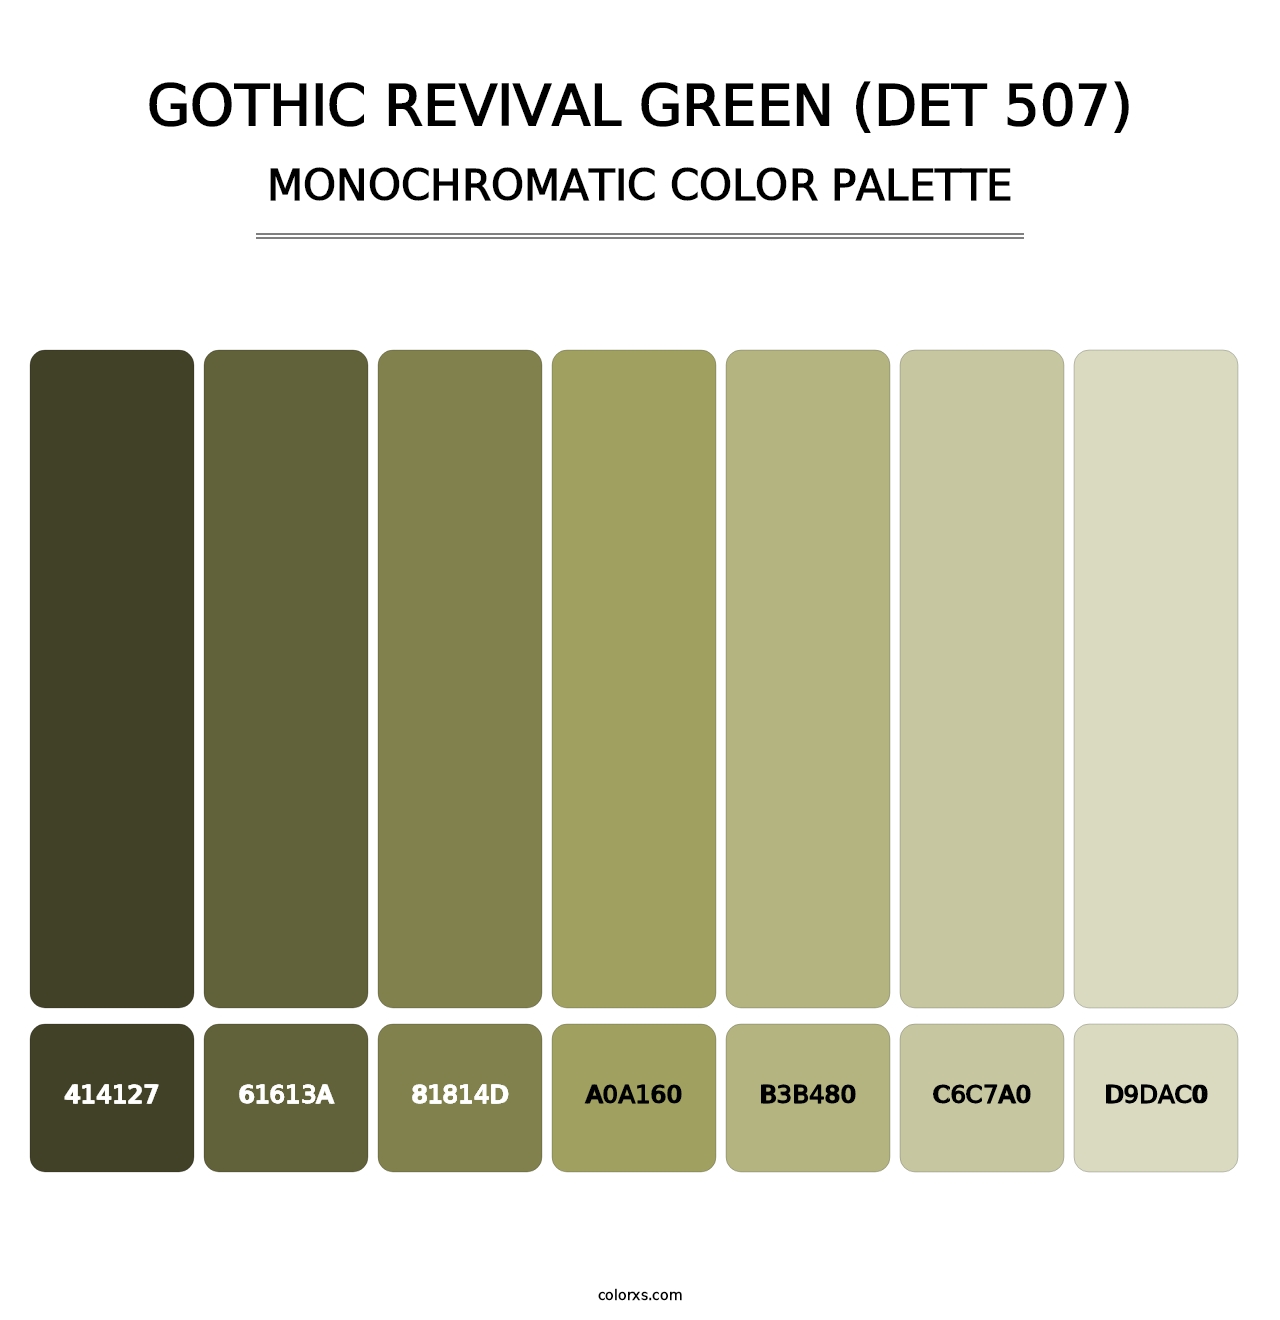 Gothic Revival Green (DET 507) - Monochromatic Color Palette